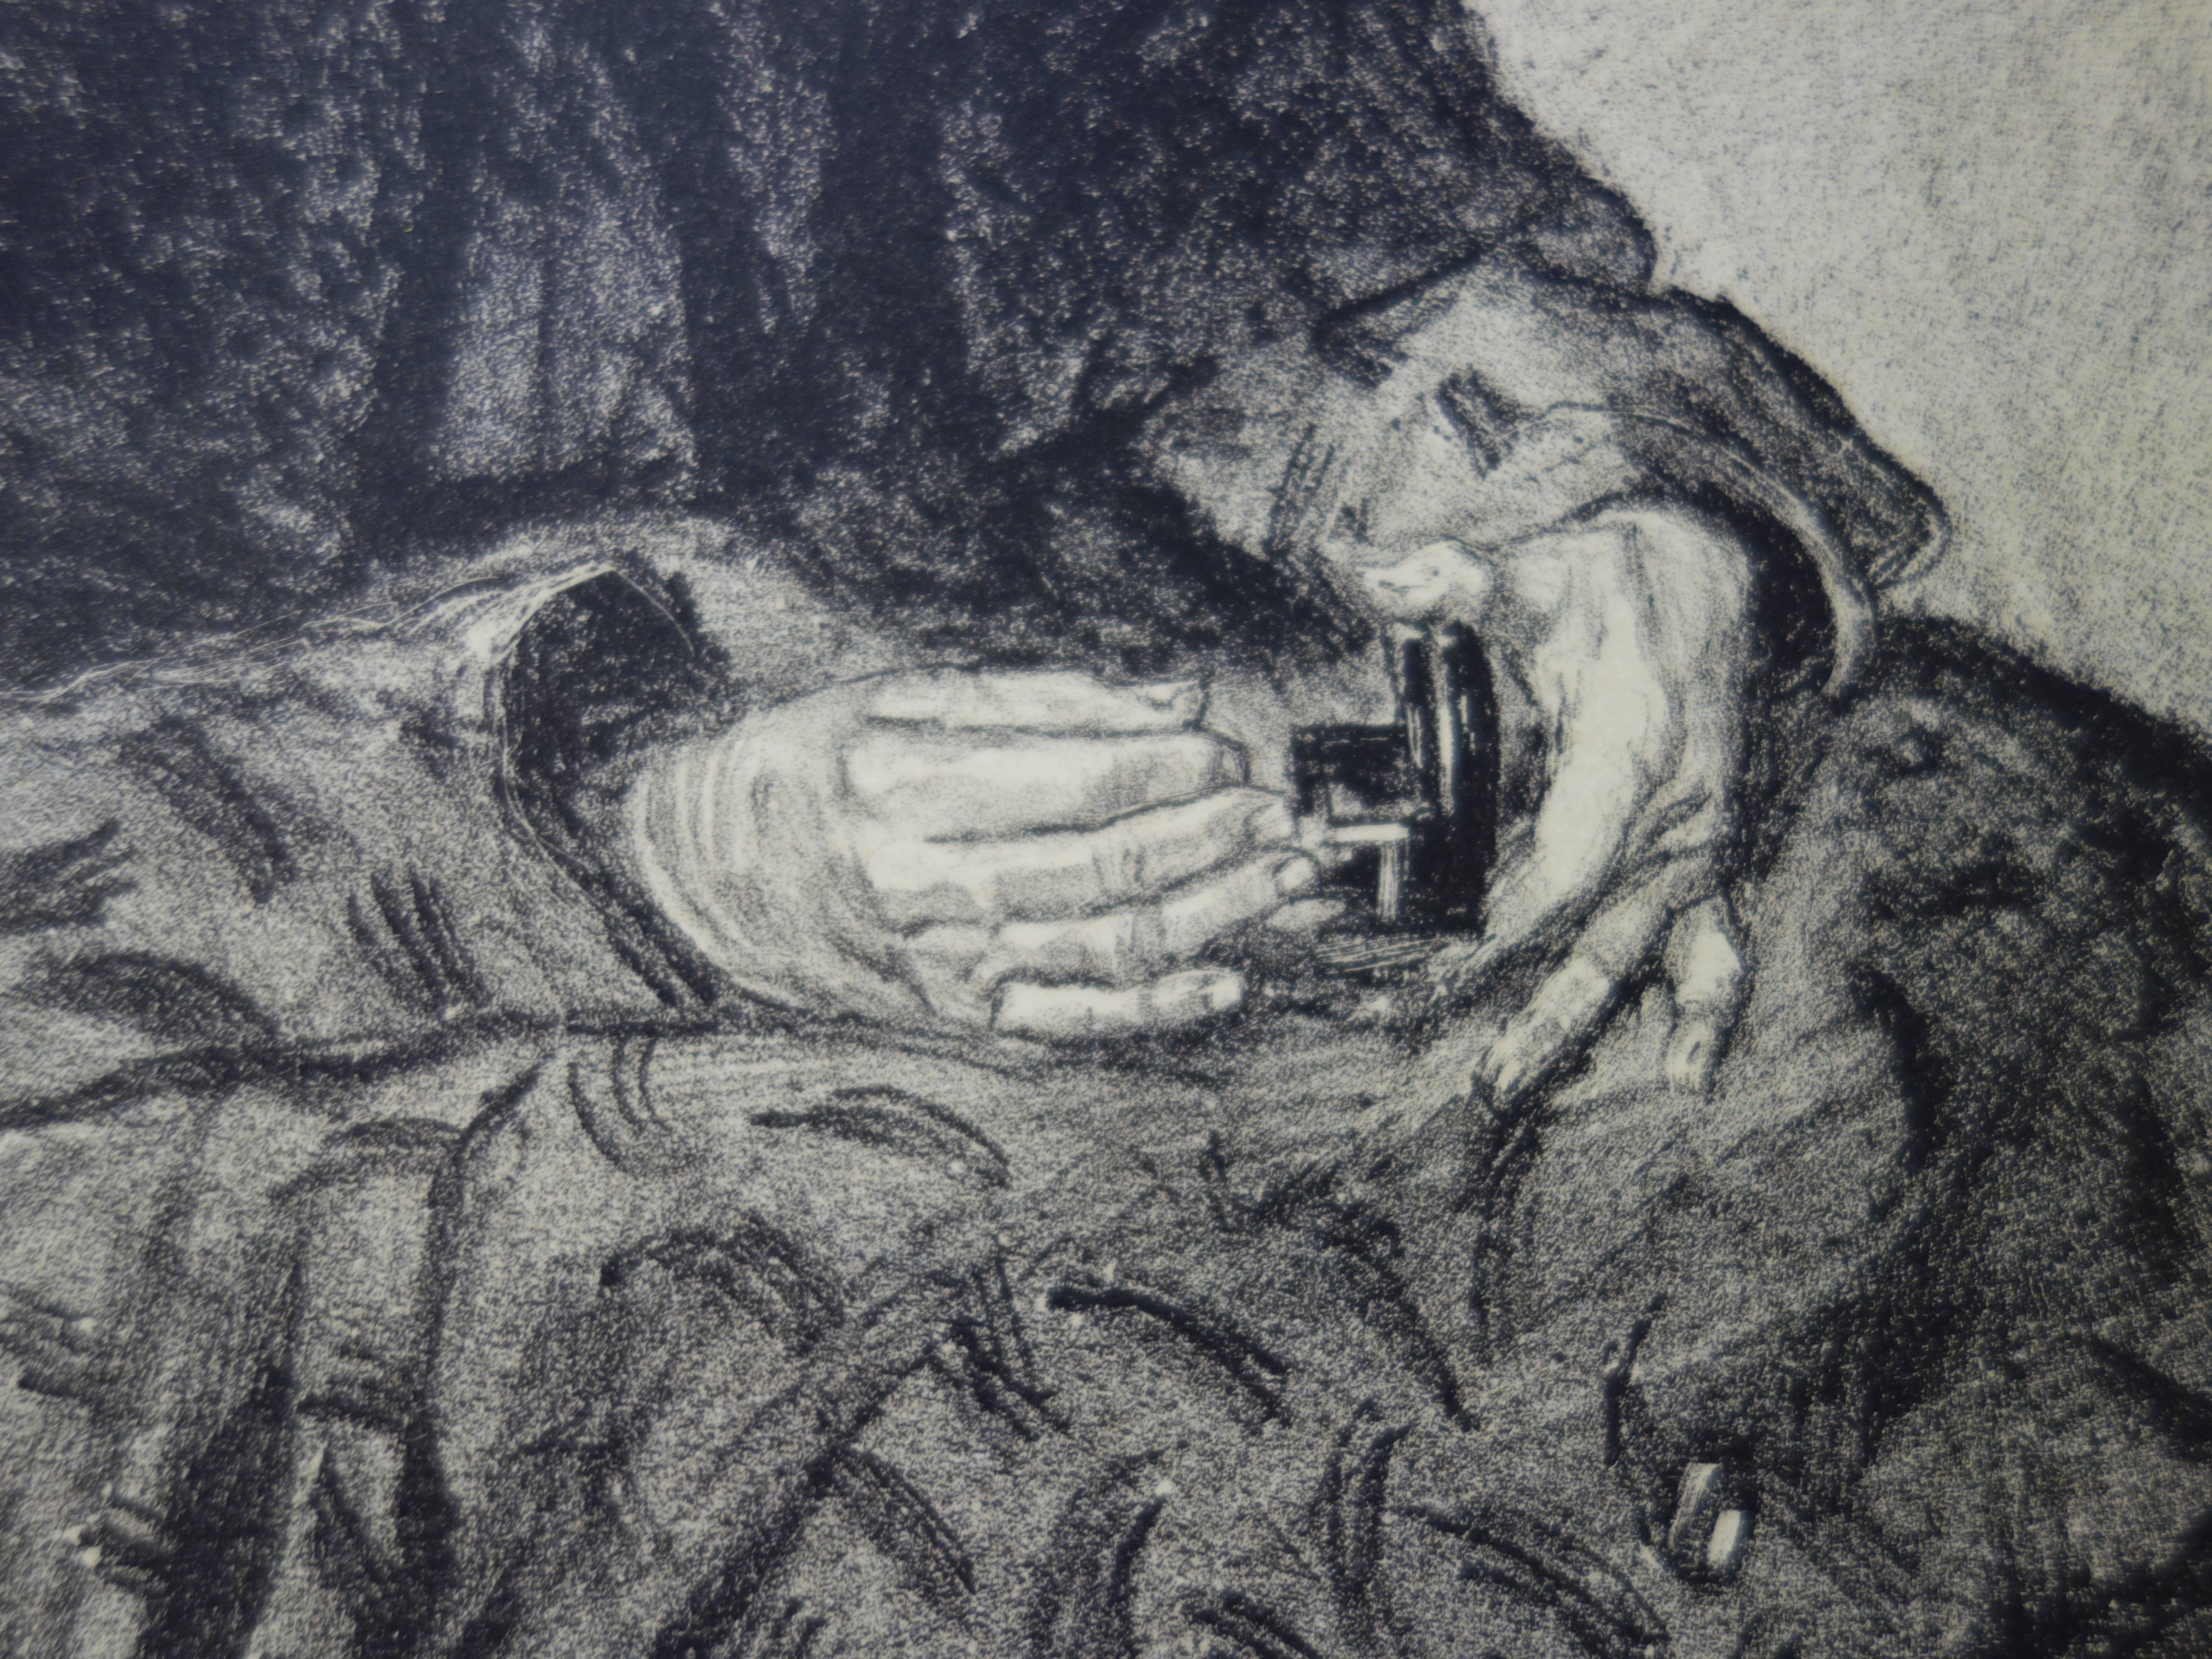 Louis MALTESTE (1862 - 1928)
La vieille femme de métier

Lithographie originale
Signature imprimée, telle que délivrée
1897/98
Imprimé sur papier Vélin (vélin)
Taille 40 x 31 cm (c. 16 x 12